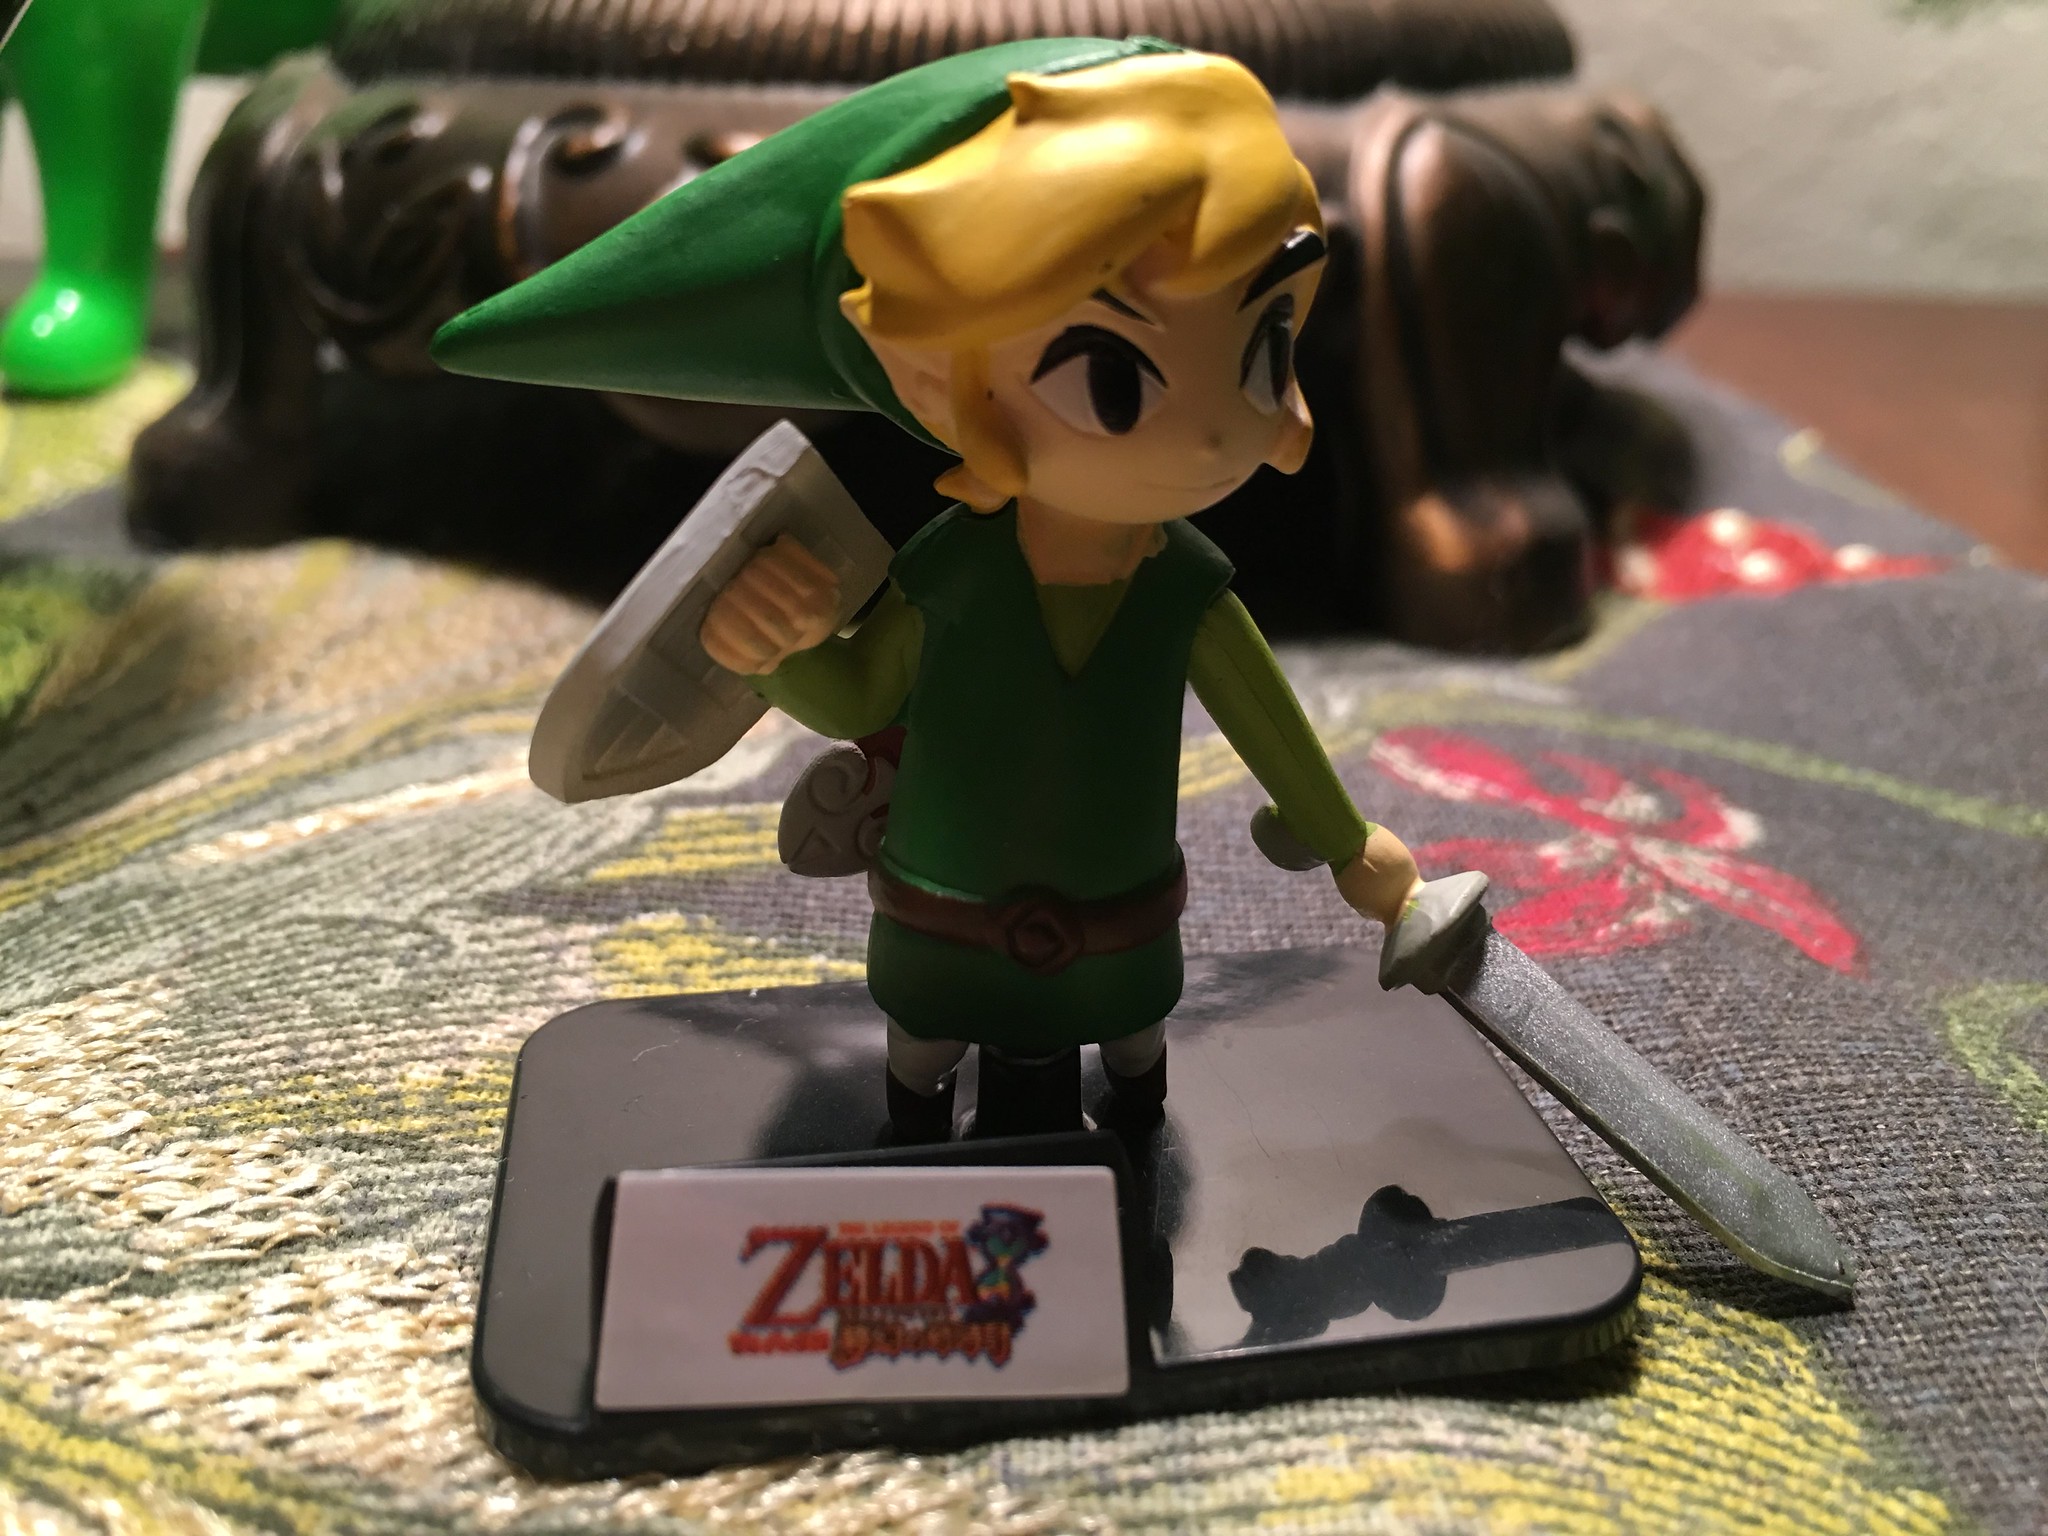 Teeny, tiny Link!